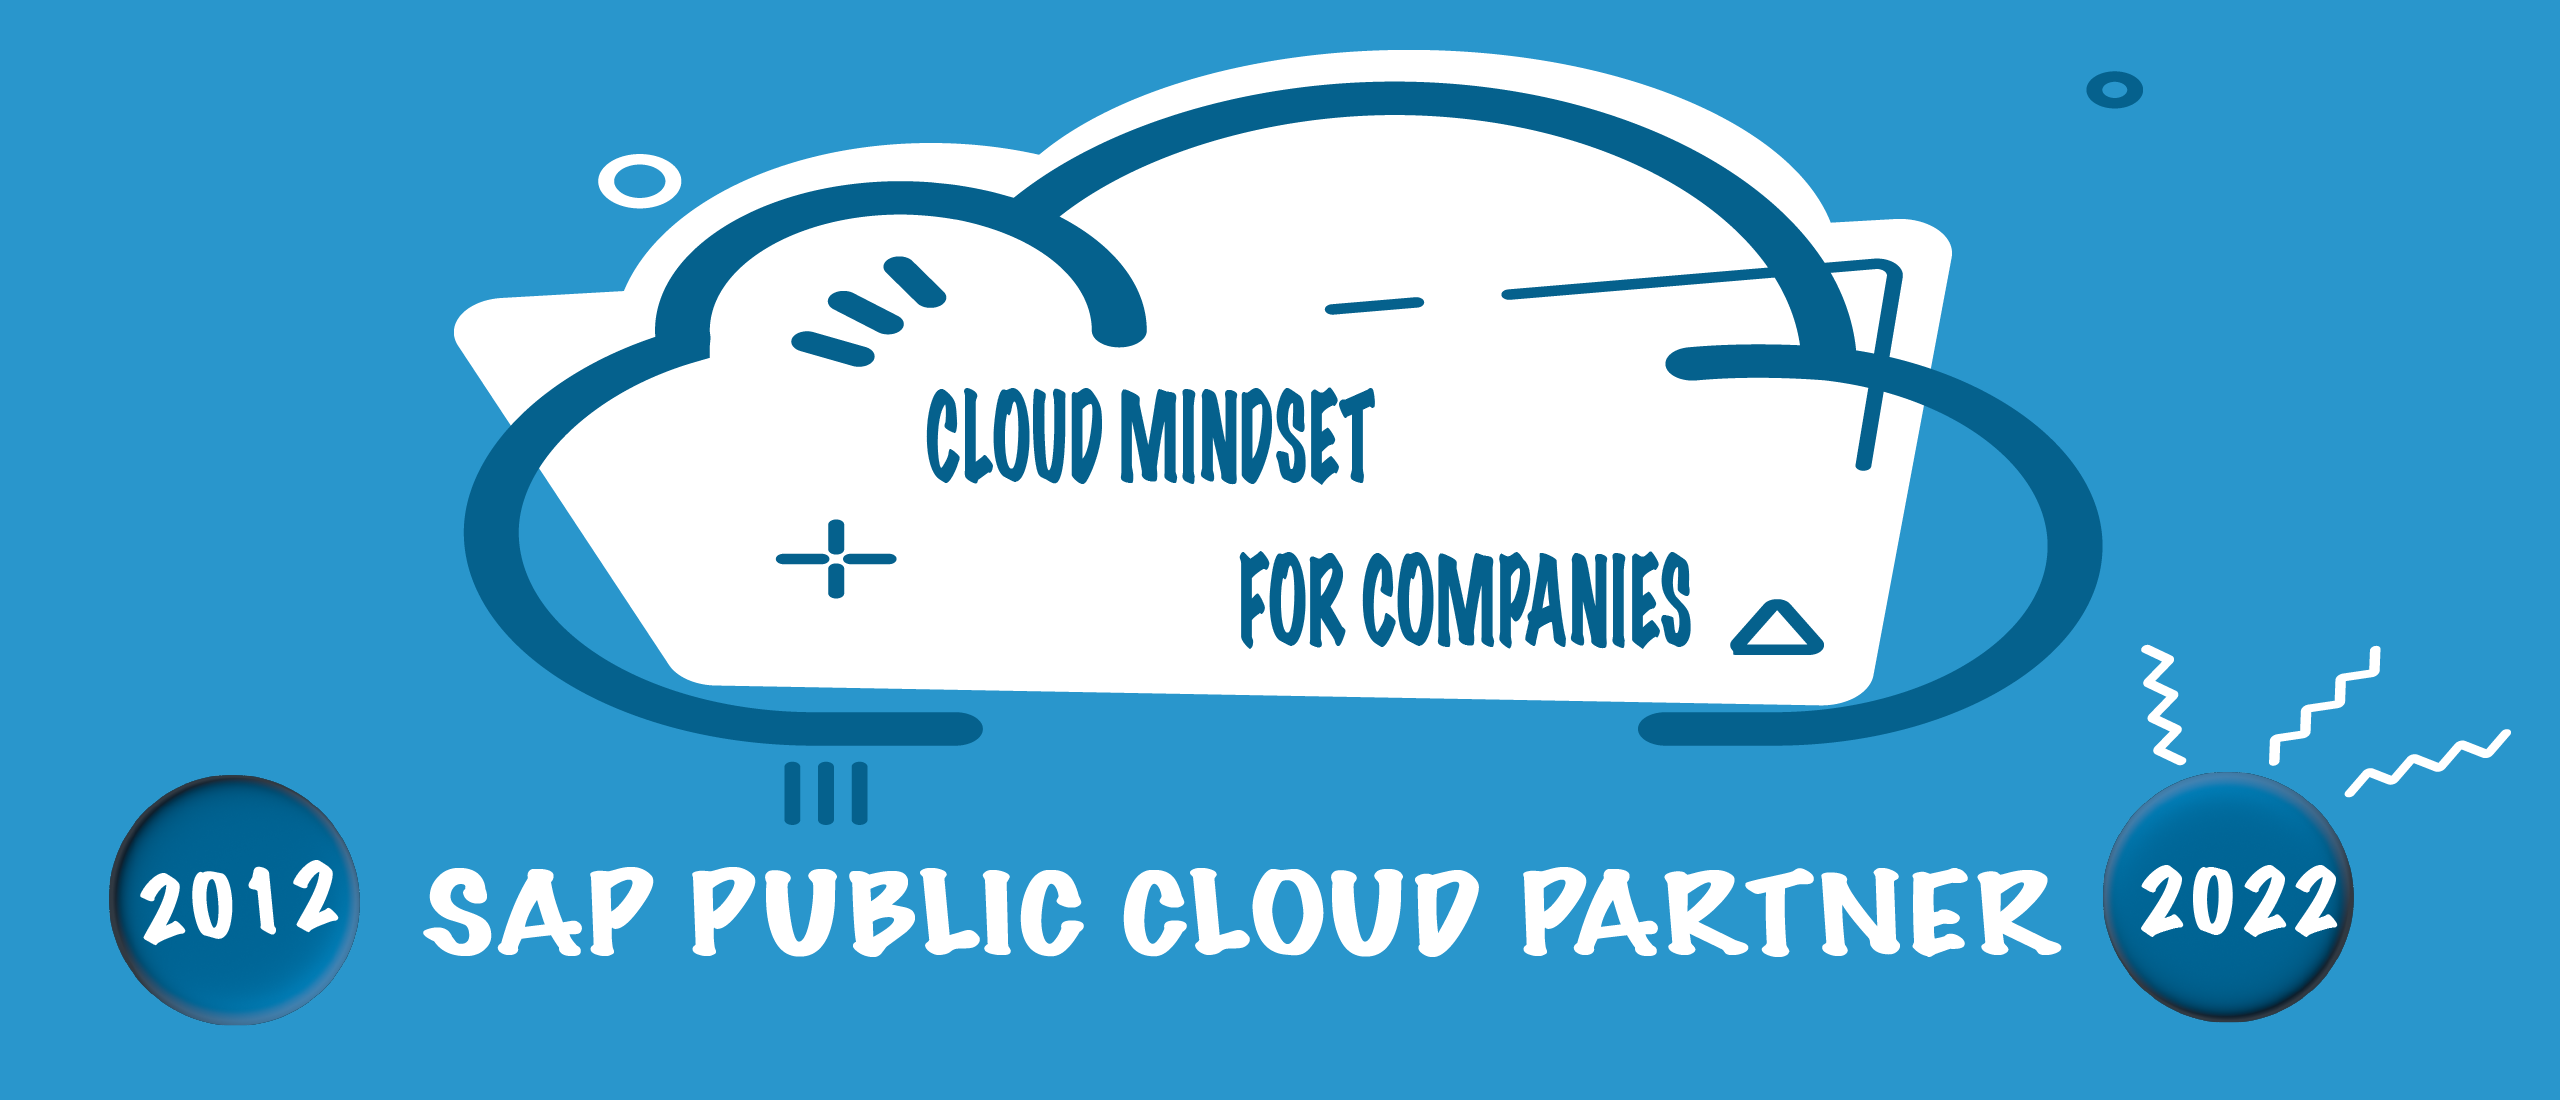 SAP Public Cloud - Cloud Mindset voor bedrijven